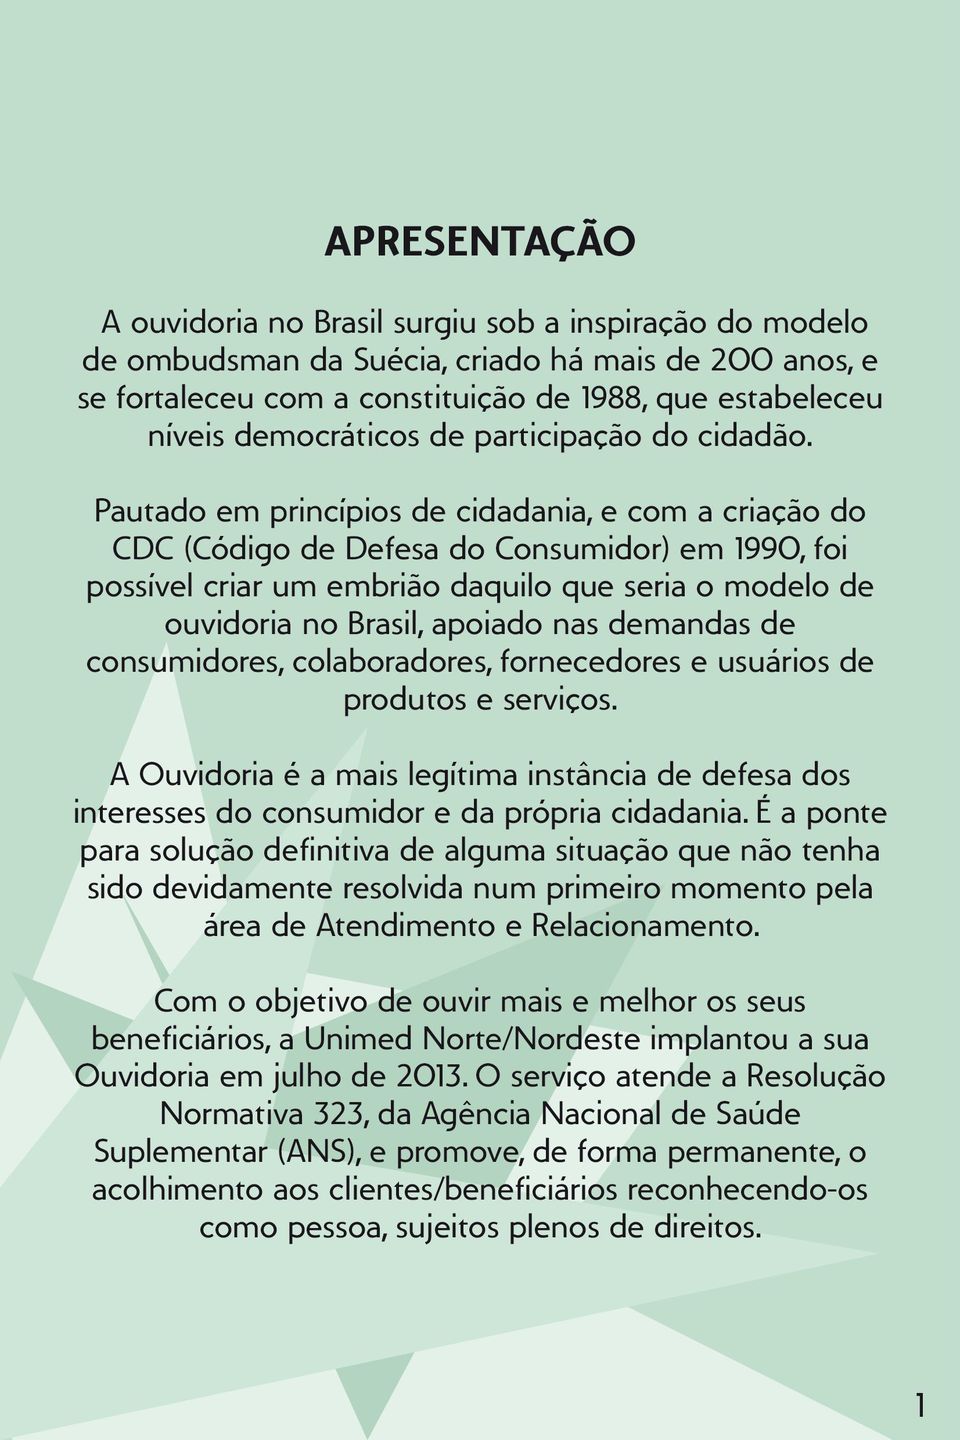 Pautado em princípios de cidadania, e com a criação do CDC (Código de Defesa do Consumidor) em 1990, foi possível criar um embrião daquilo que seria o modelo de ouvidoria no Brasil, apoiado nas